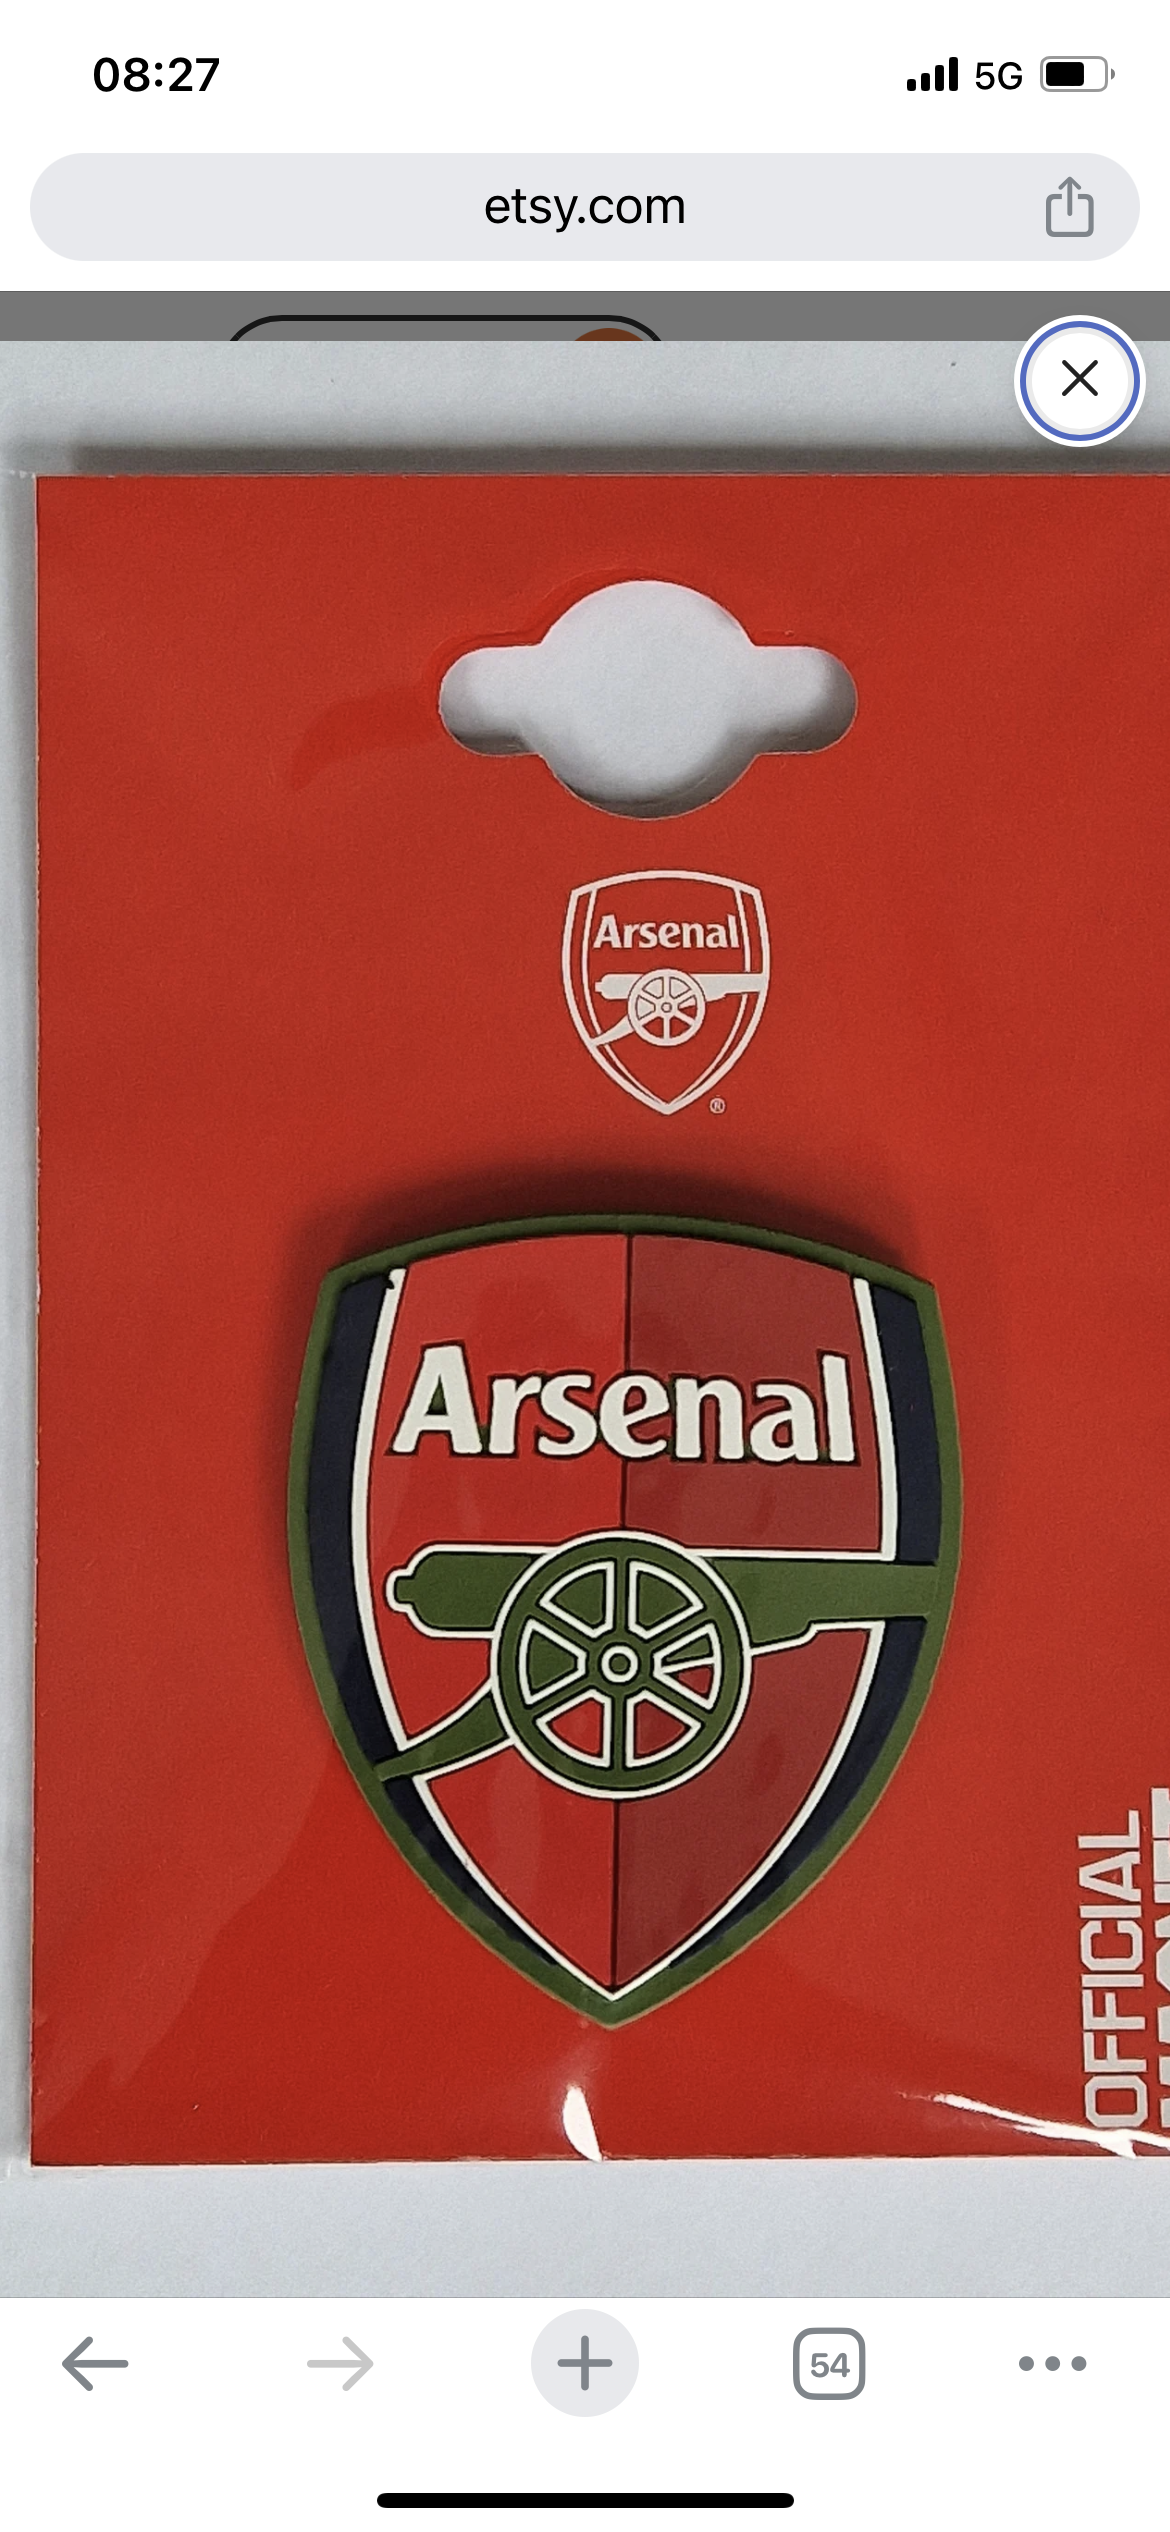 Official Arsenal Fridge Magnet